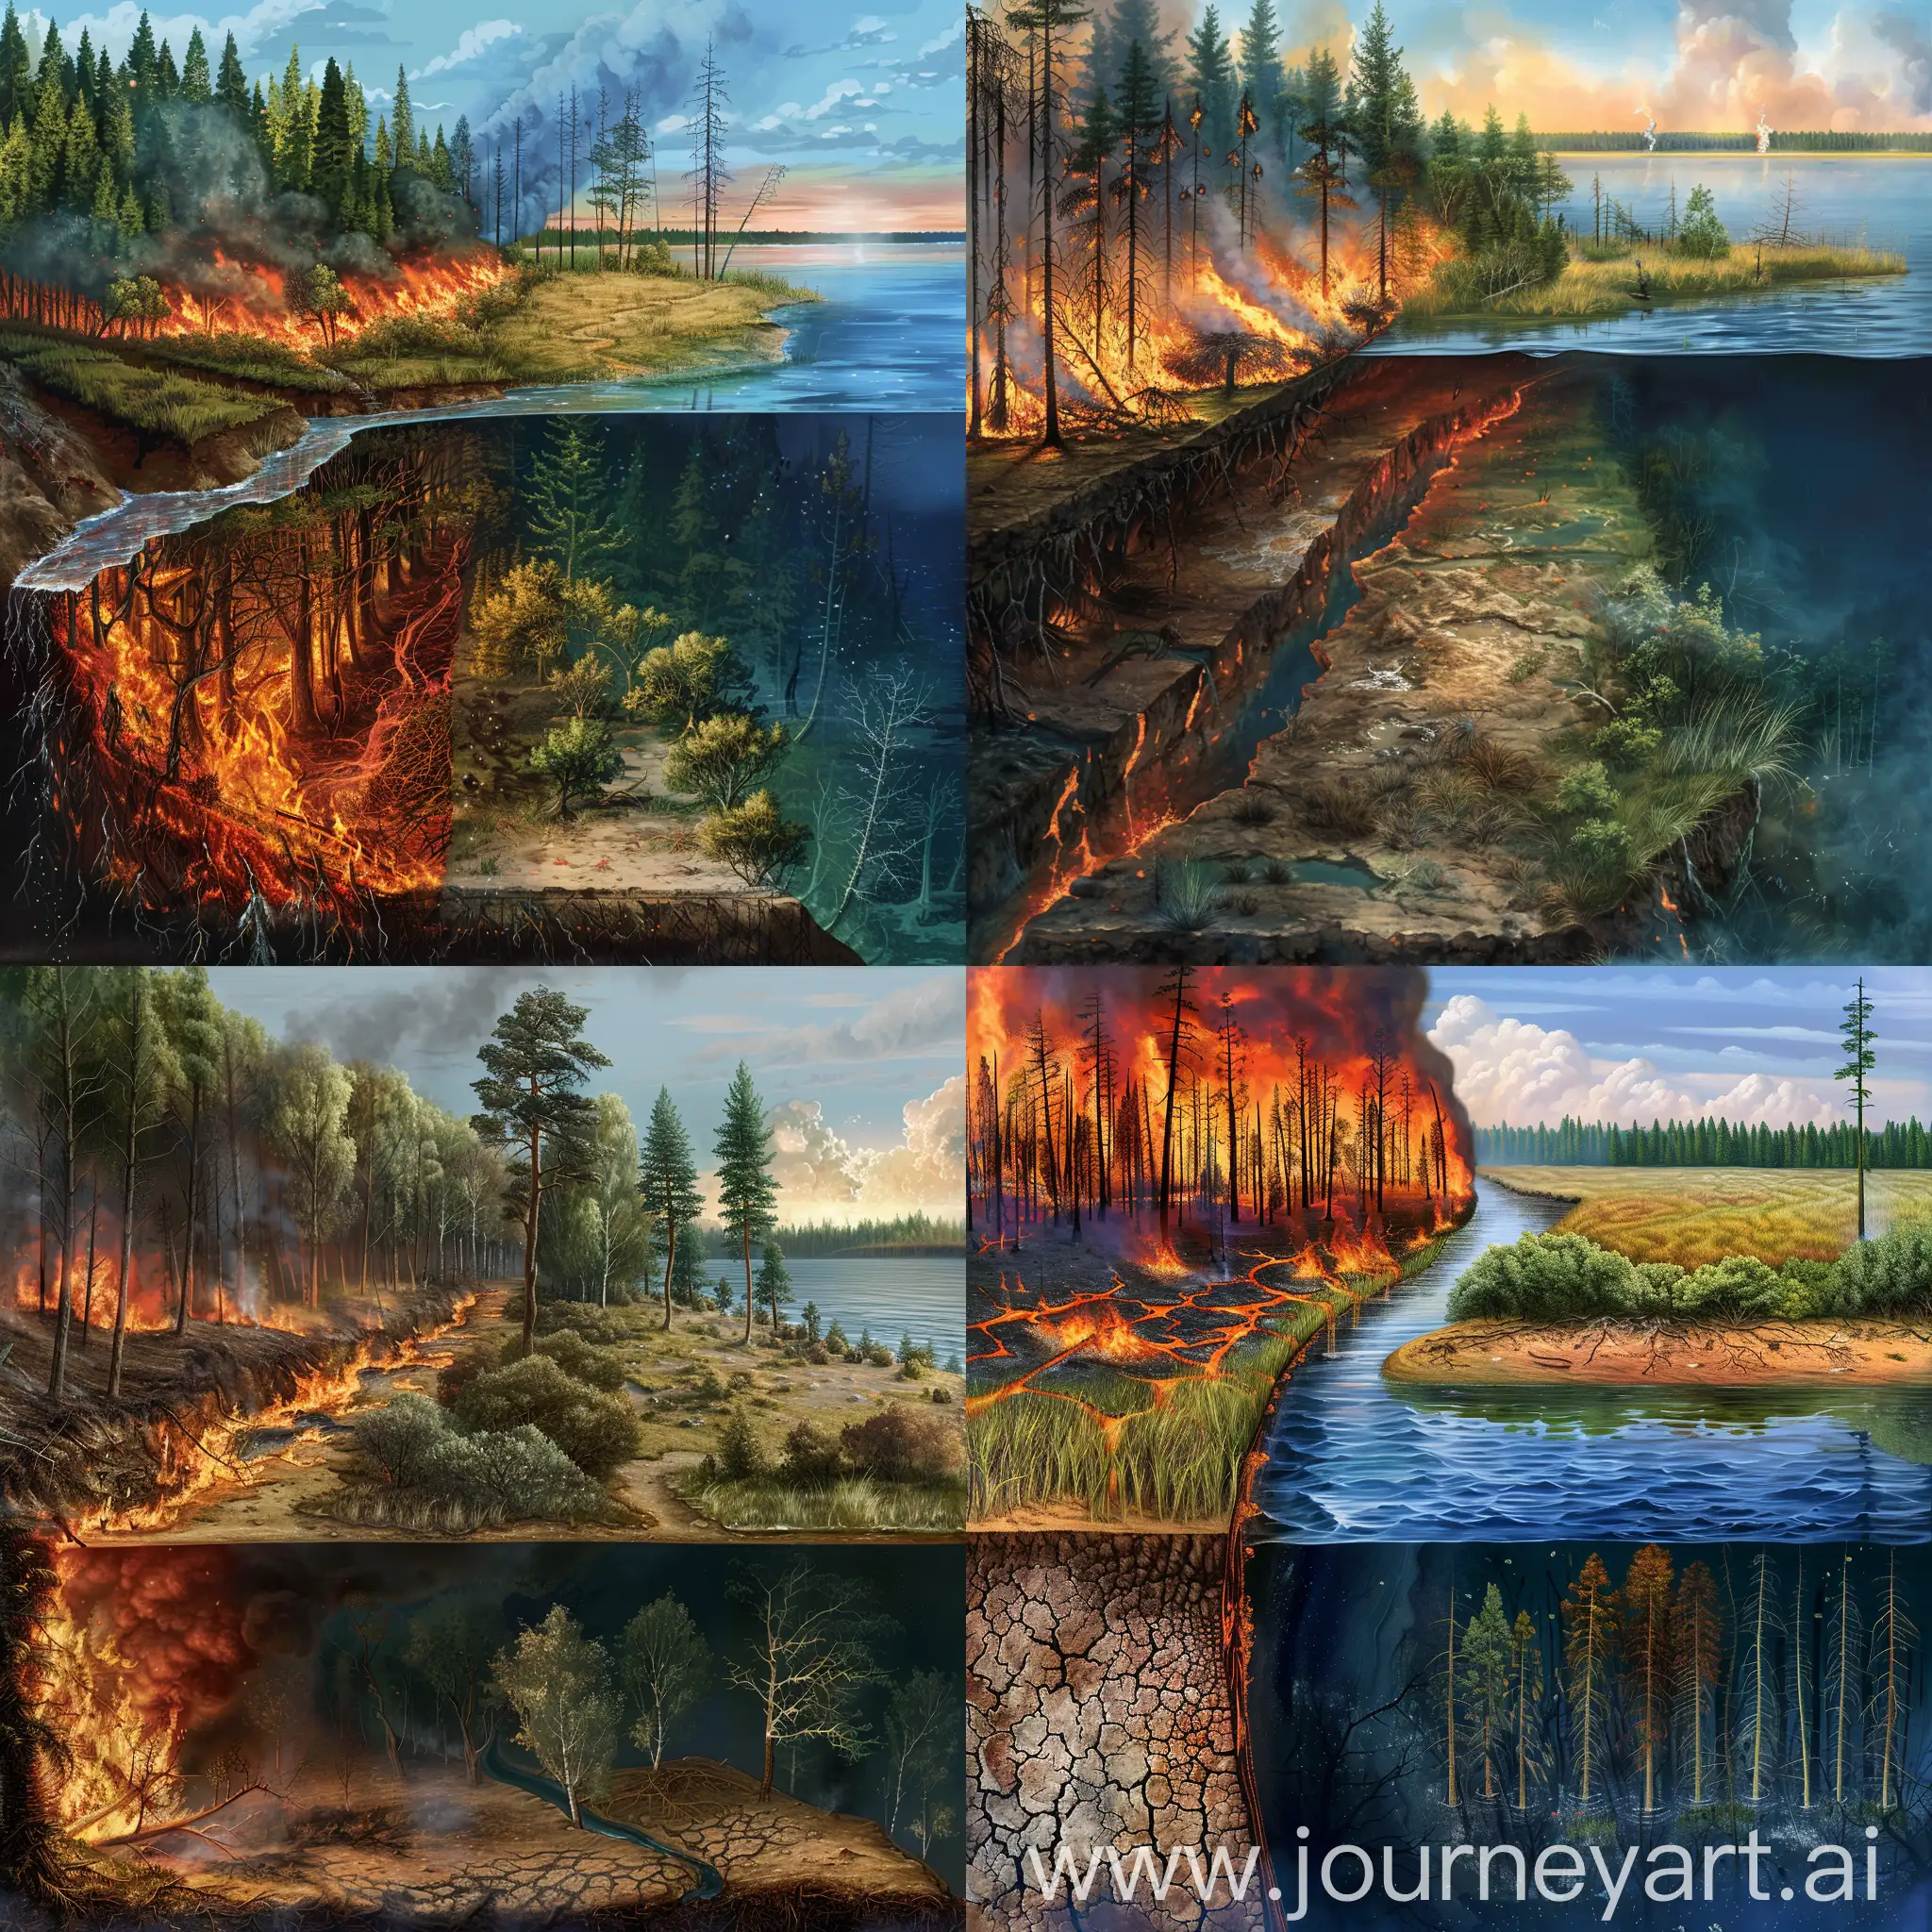 画面的左边是大片森林，森林正在发生有森林火灾和并且存在烧焦的树木，森林右边缘是小面积的草地和灌木丛，往右是湖泊，湖岸边上有火灾过后烧焦的树木，画面中横向的河流穿过发生火灾的森林与盐碱地汇入画面右边的湖泊，同时将火灾后产生的污染物带进湖泊中，画面中湖泊占大部分区域，以斜视的视角看这场景作画，湖泊中有污染痕迹，并且在图片下方十分之一的画面为该地区的竖直剖面图，能表现湖泊深度的剖面图，画面的整体呈油画的风格，剖面图类似于土壤分层那样 ，有该地区的土壤和湖泊。